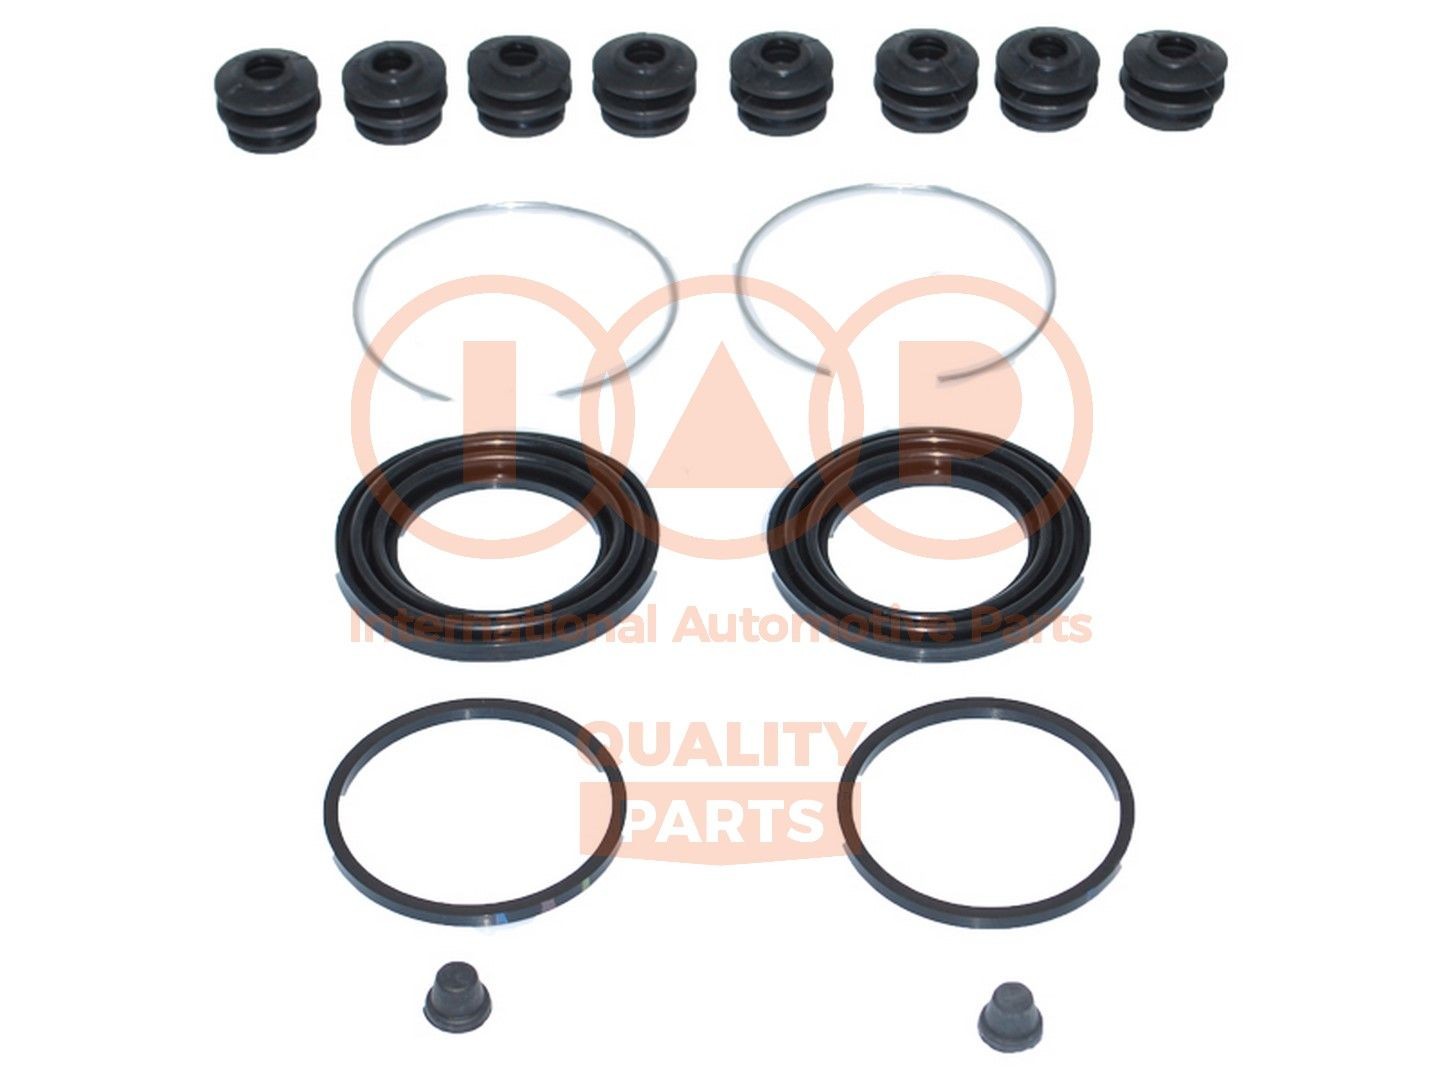 IAP QUALITY PARTS Front Axle Brake Caliper Repair Kit 706-16035 buy